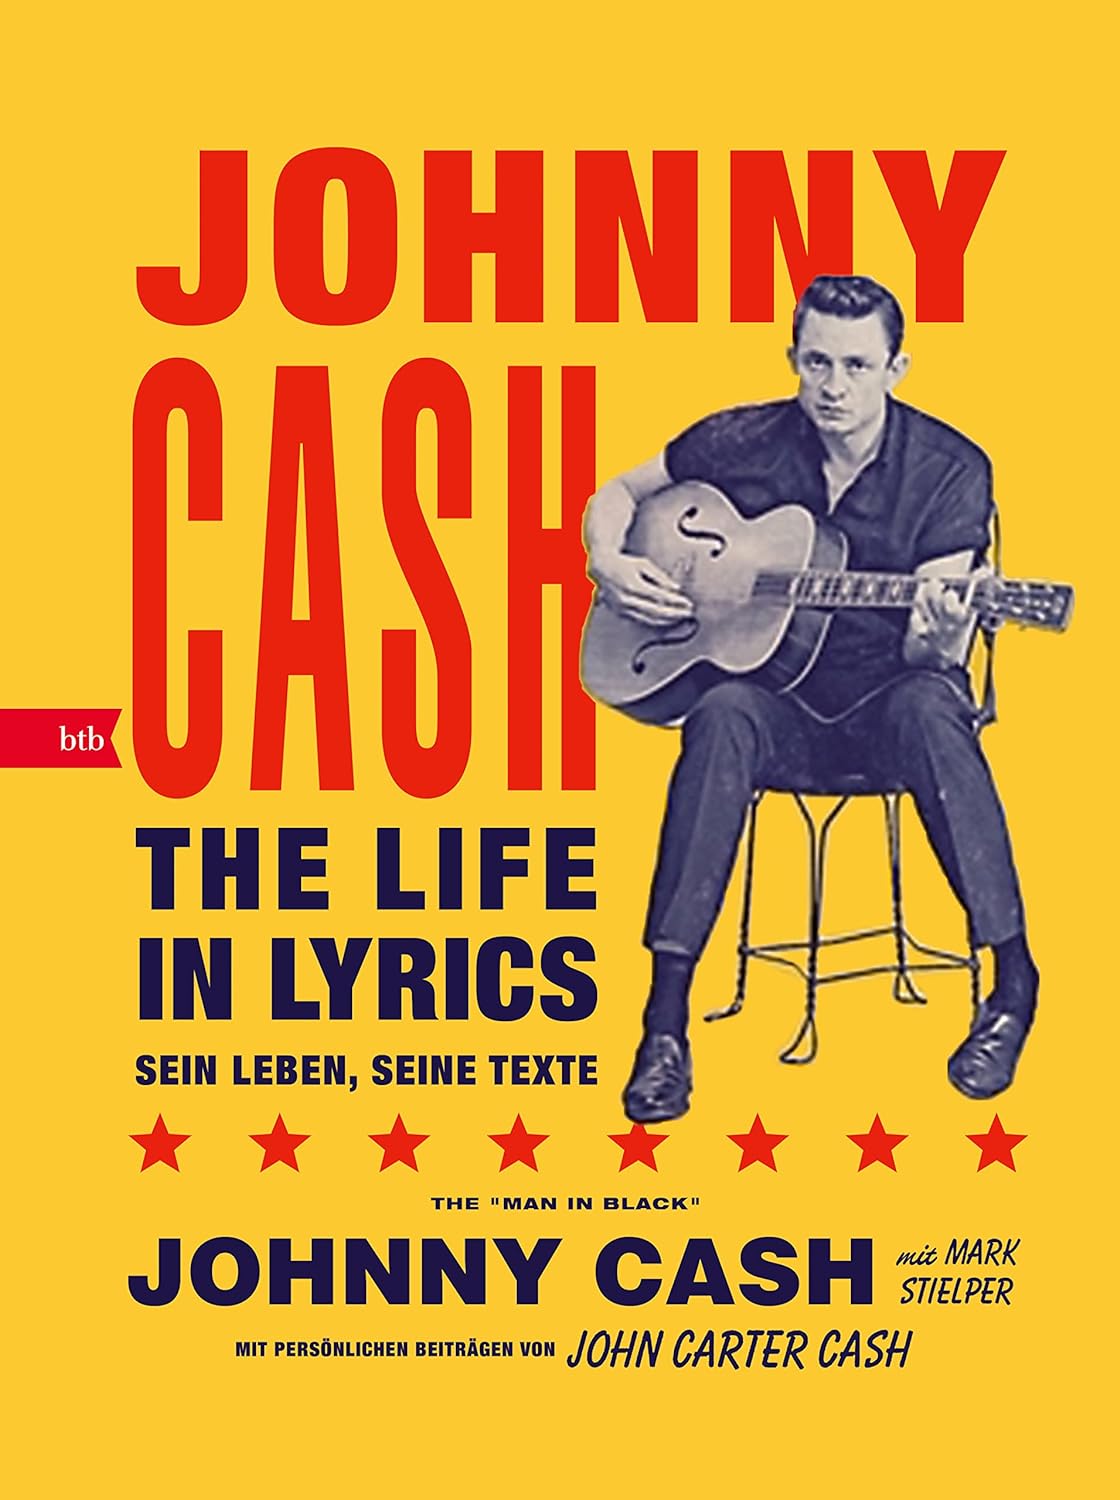 Johnny Cash - The Life In Lyrics - Sein Leben, seine Texte